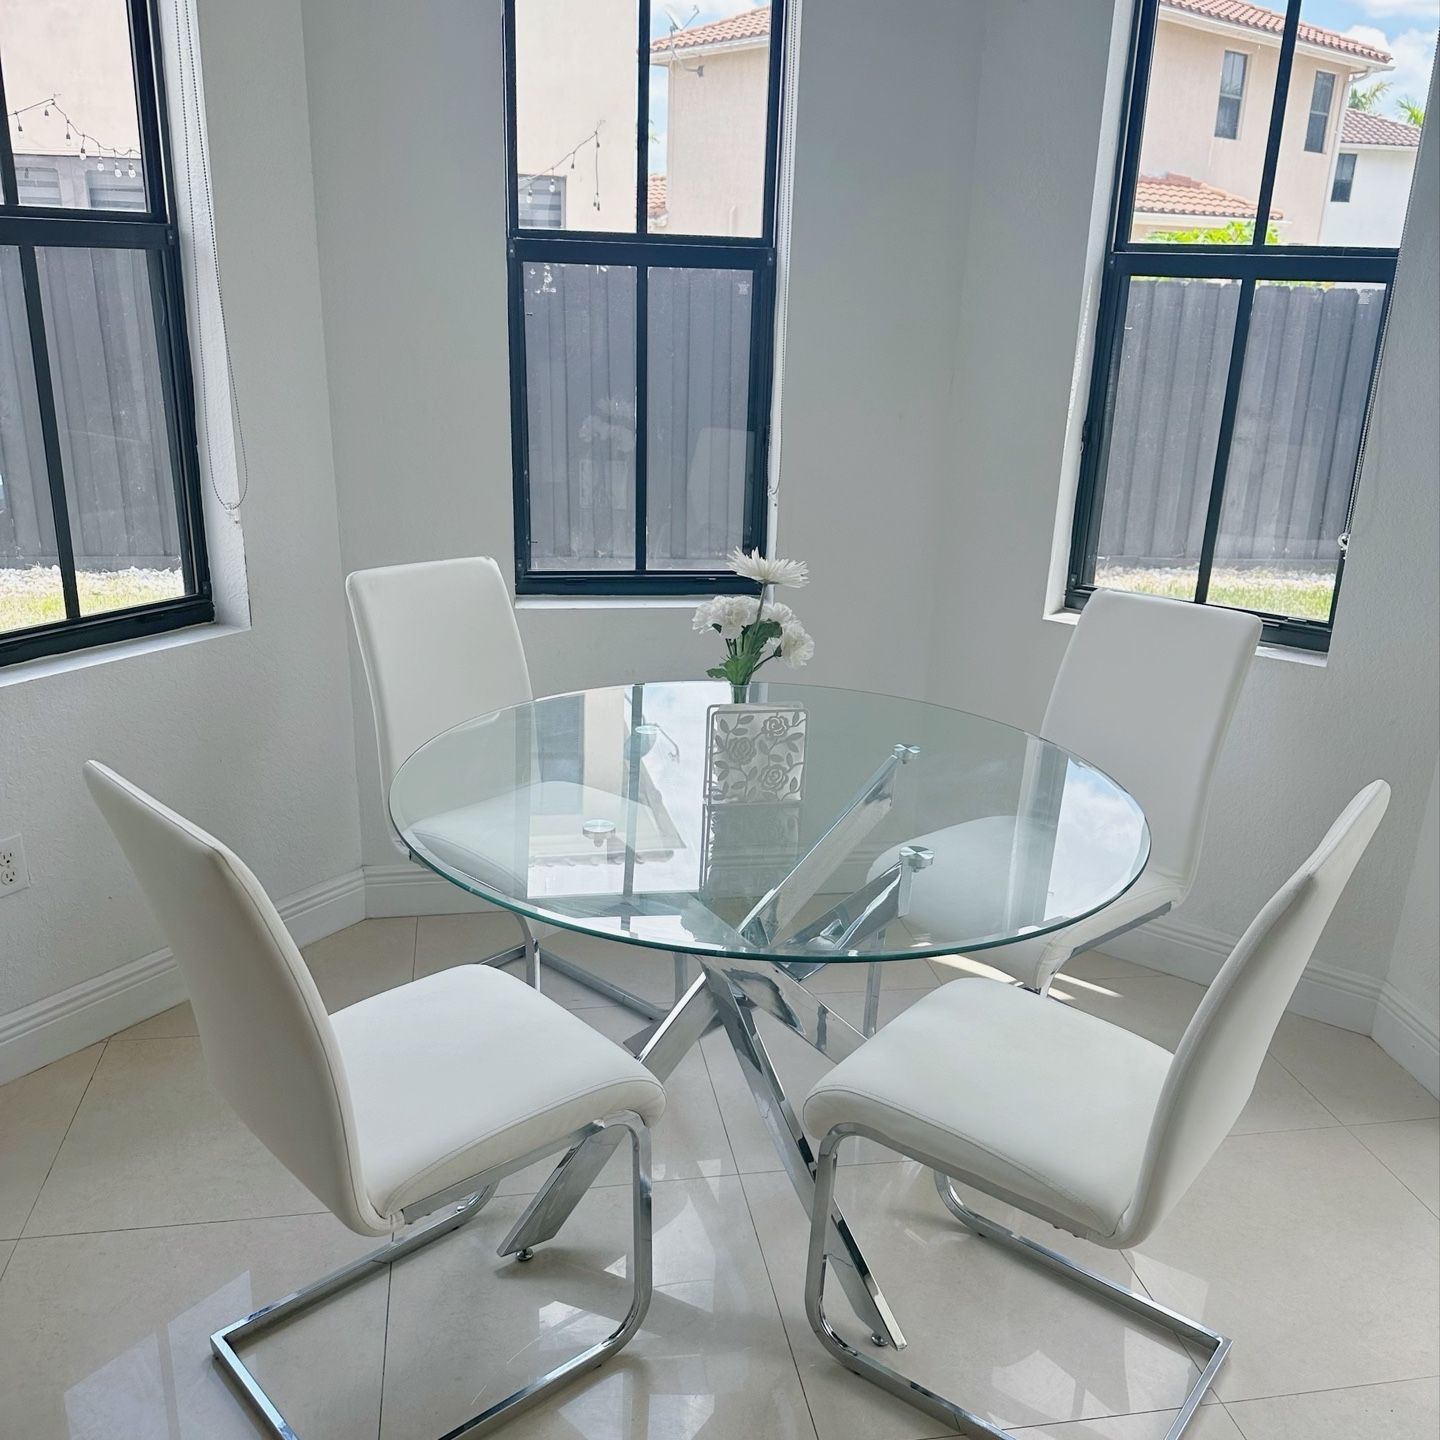 Glass Dining Table + 4 Chairs **Like New** - Mesa De Comedor + 4 Sillas Cuero Blanco En Perfectas Condiciones